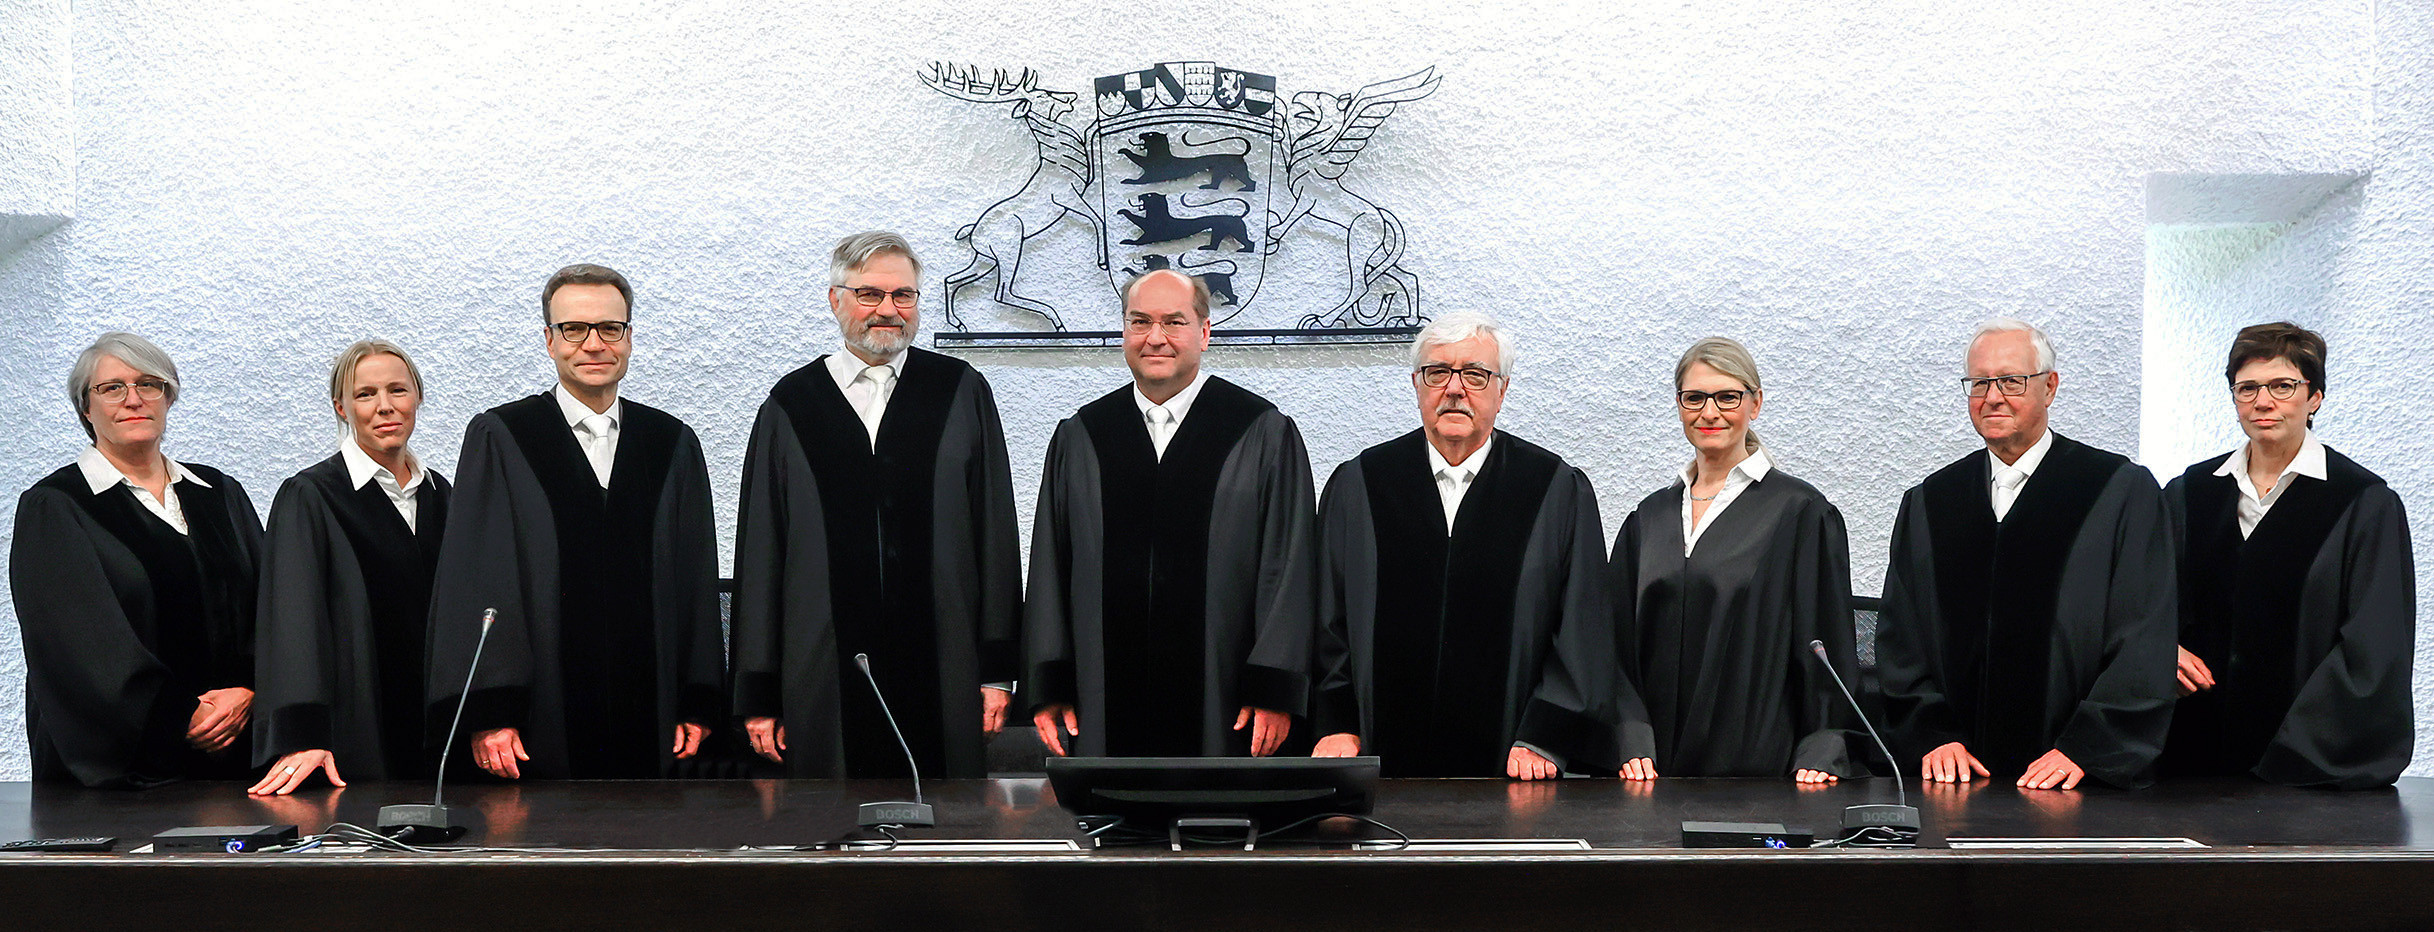 Gruppenbild der Richter am Verfassungsgerichtshof